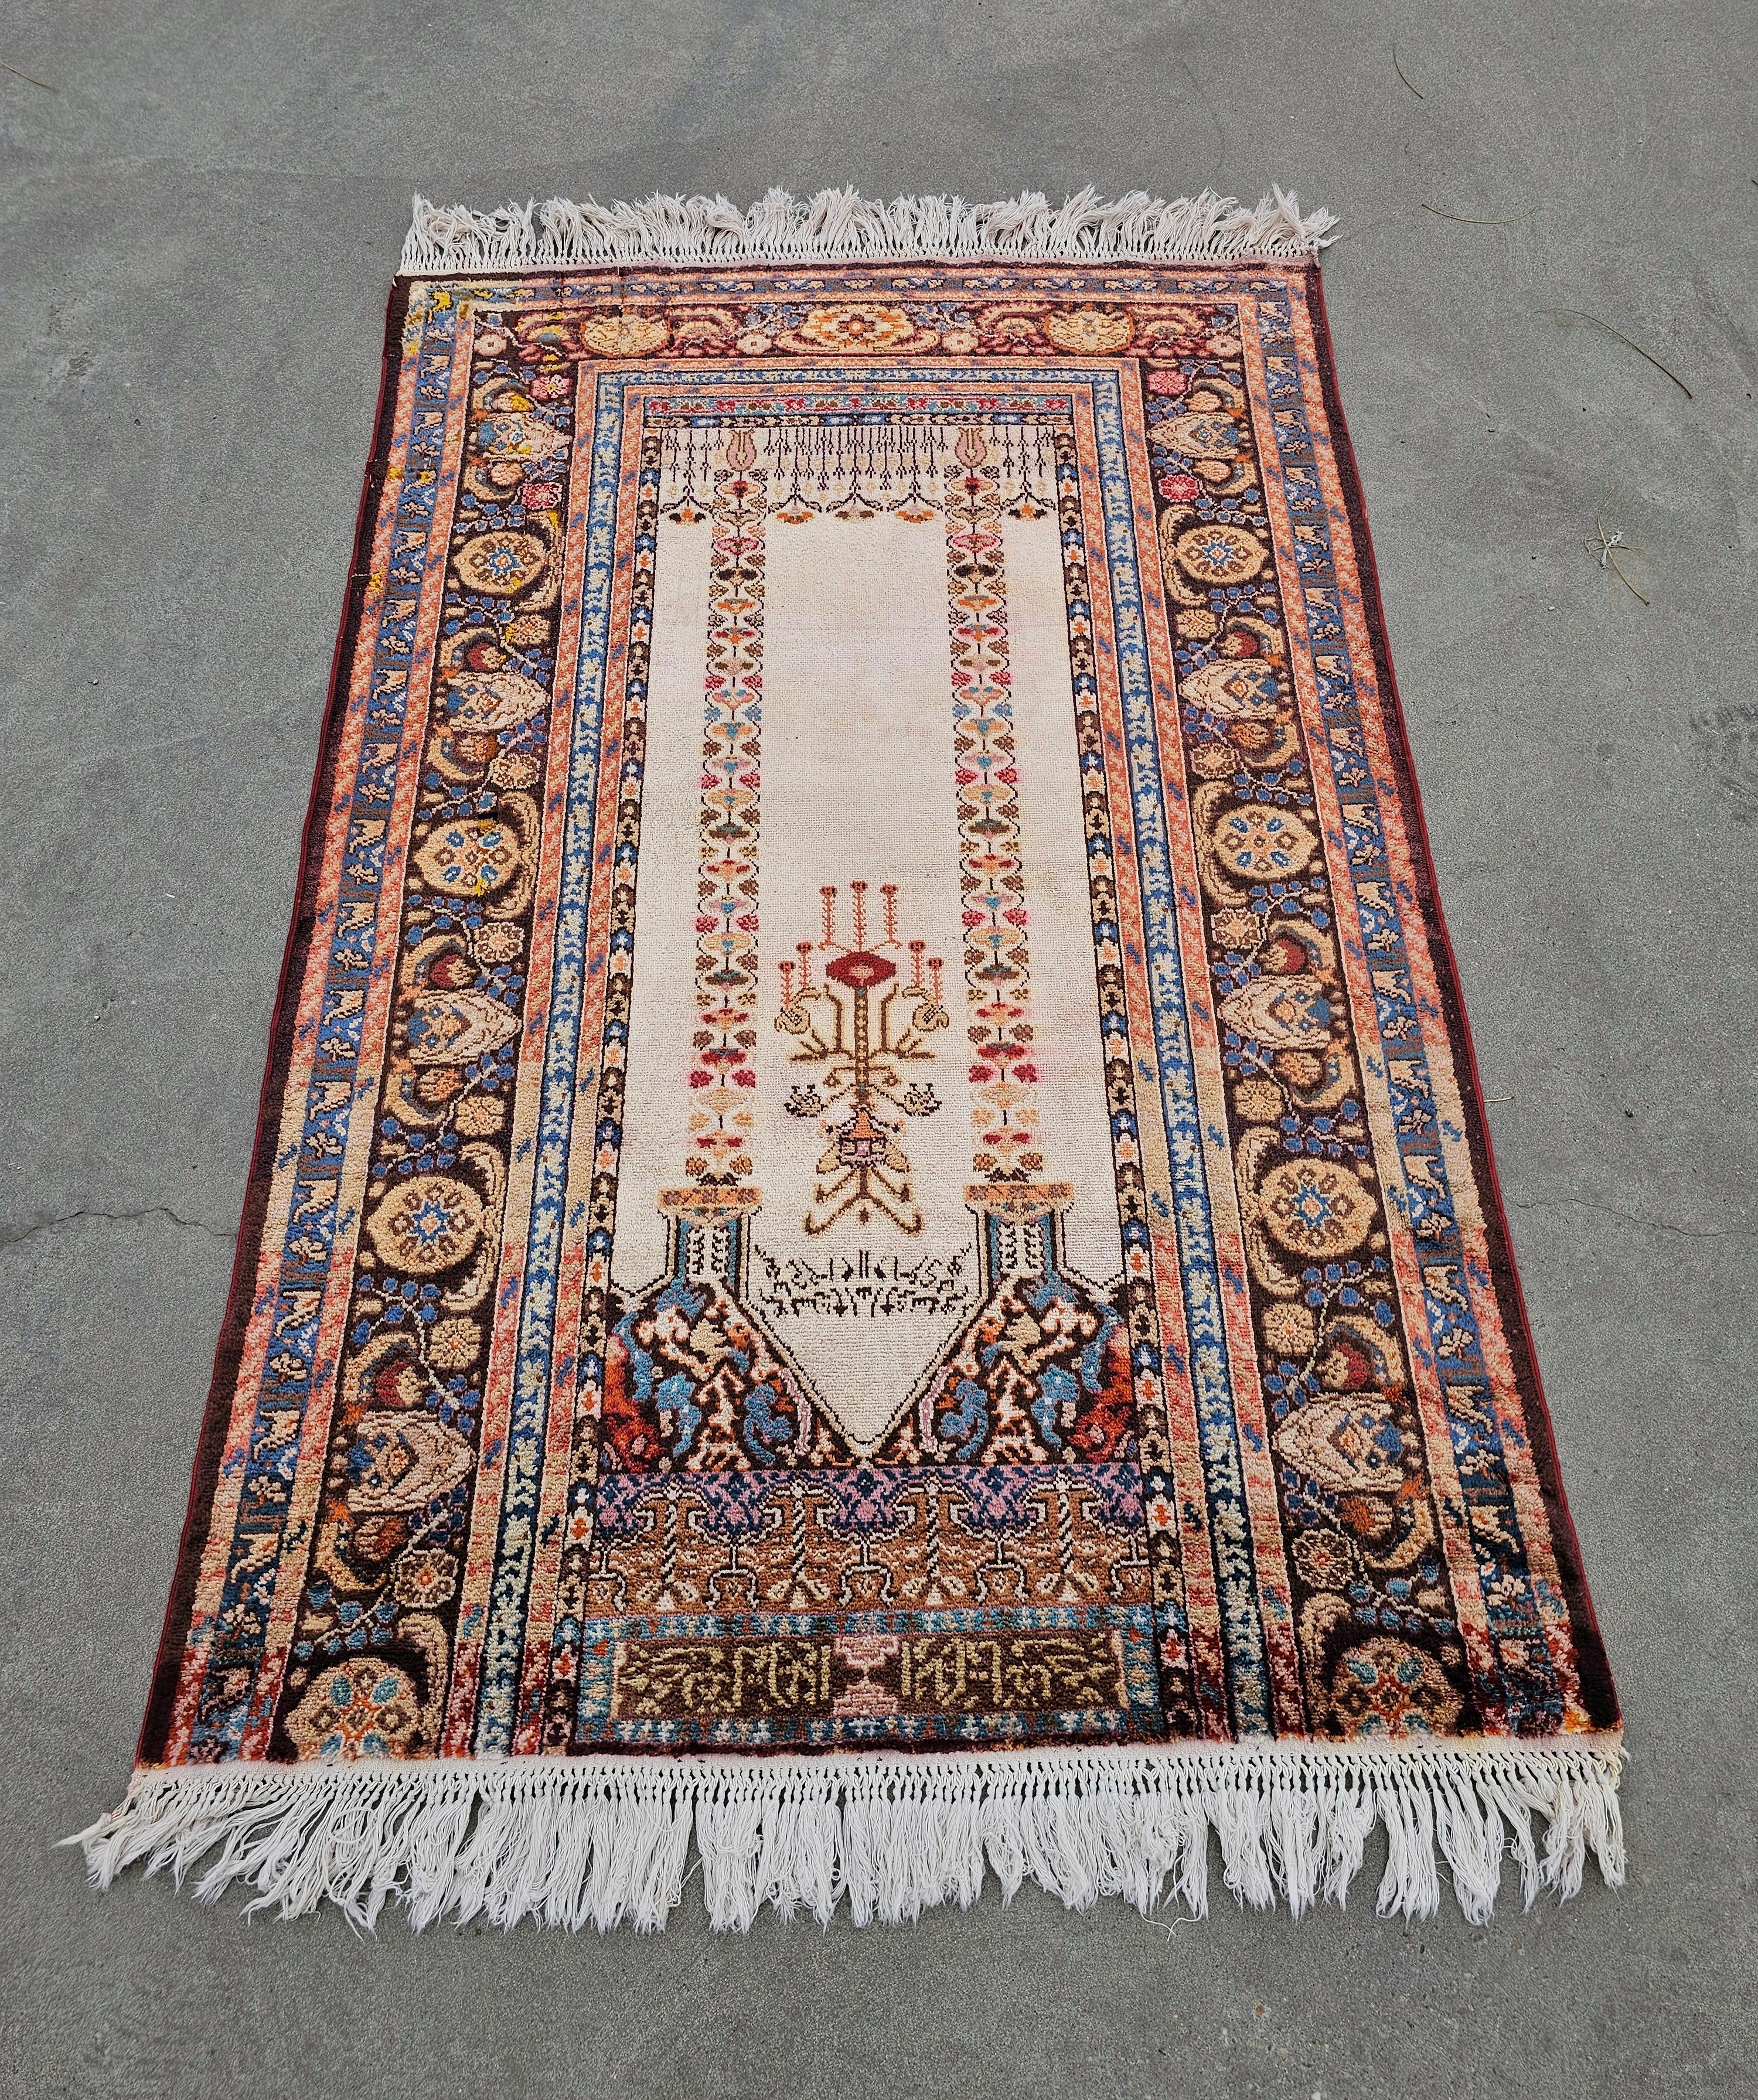 Vous trouverez dans cette annonce un spectaculaire tapis de prière en soie nouée à la main de l'ouest de l'Anatolie. Ce tapis Panderma présente un motif Mihrab, avec des écritures, et de magnifiques couleurs crème, violet, bleu bordeaux et orange.